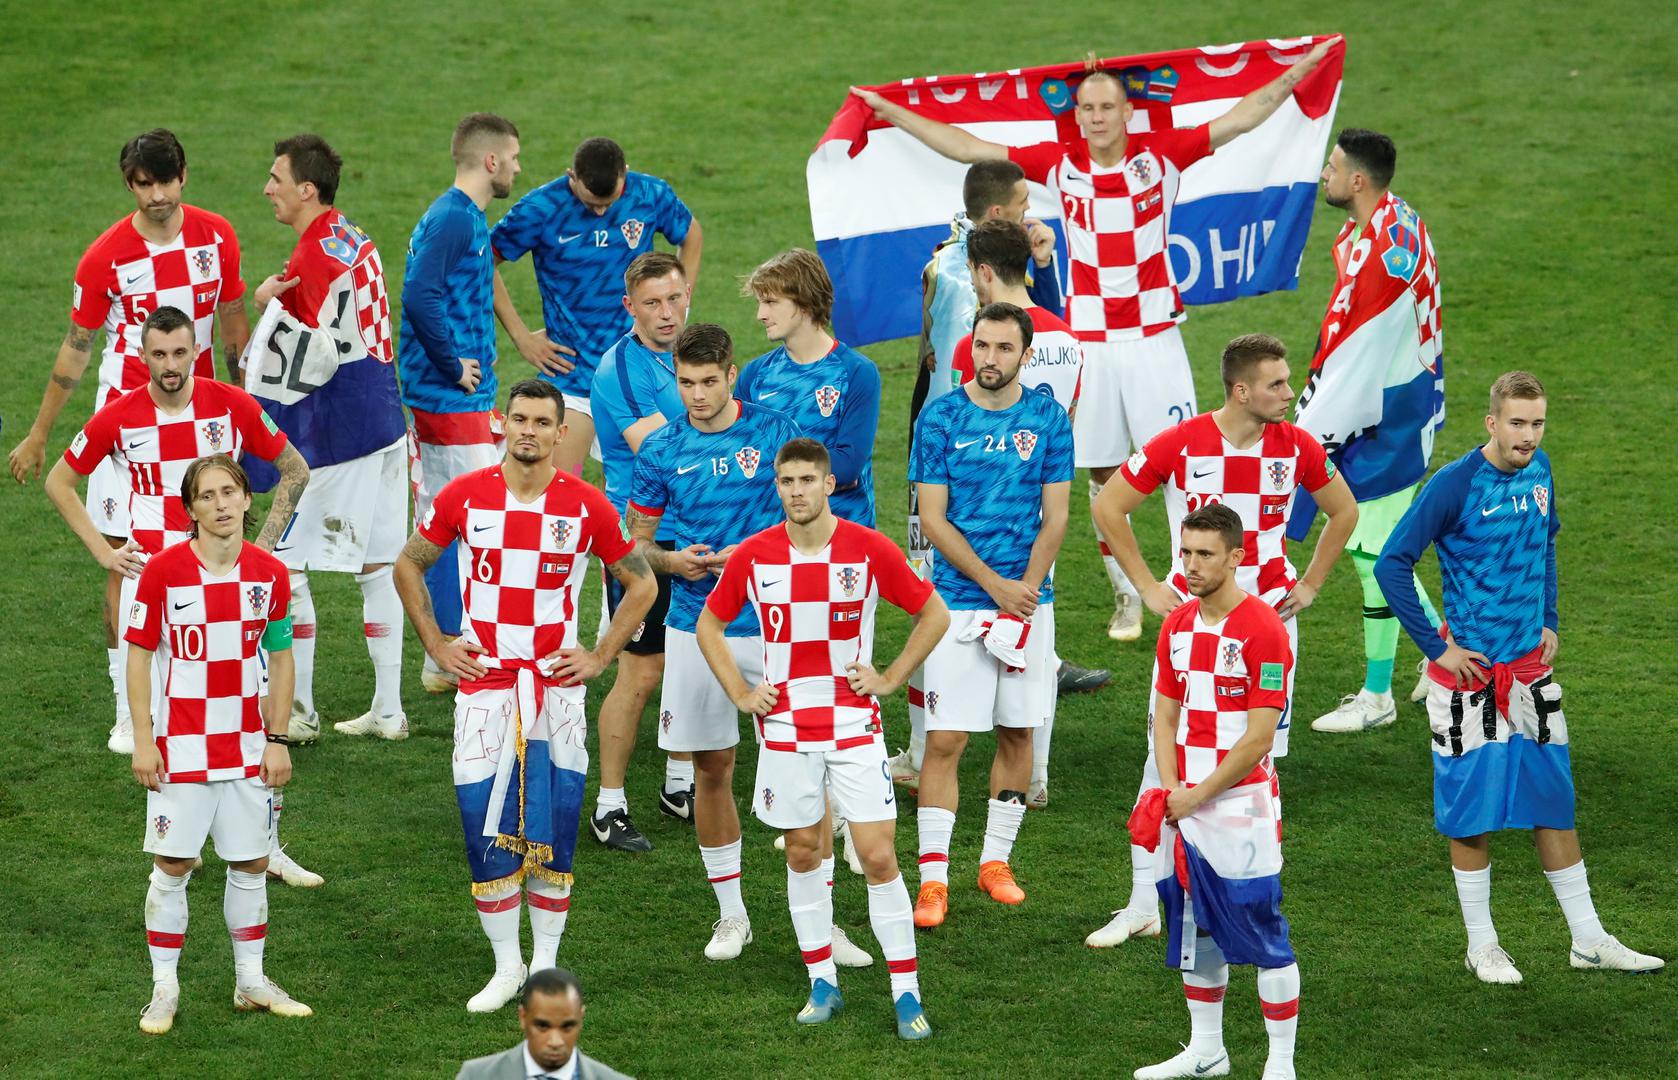 No, bez obzira na to, Hrvatska je ostvarila najveći uspjeh u povijesti našeg nogometa